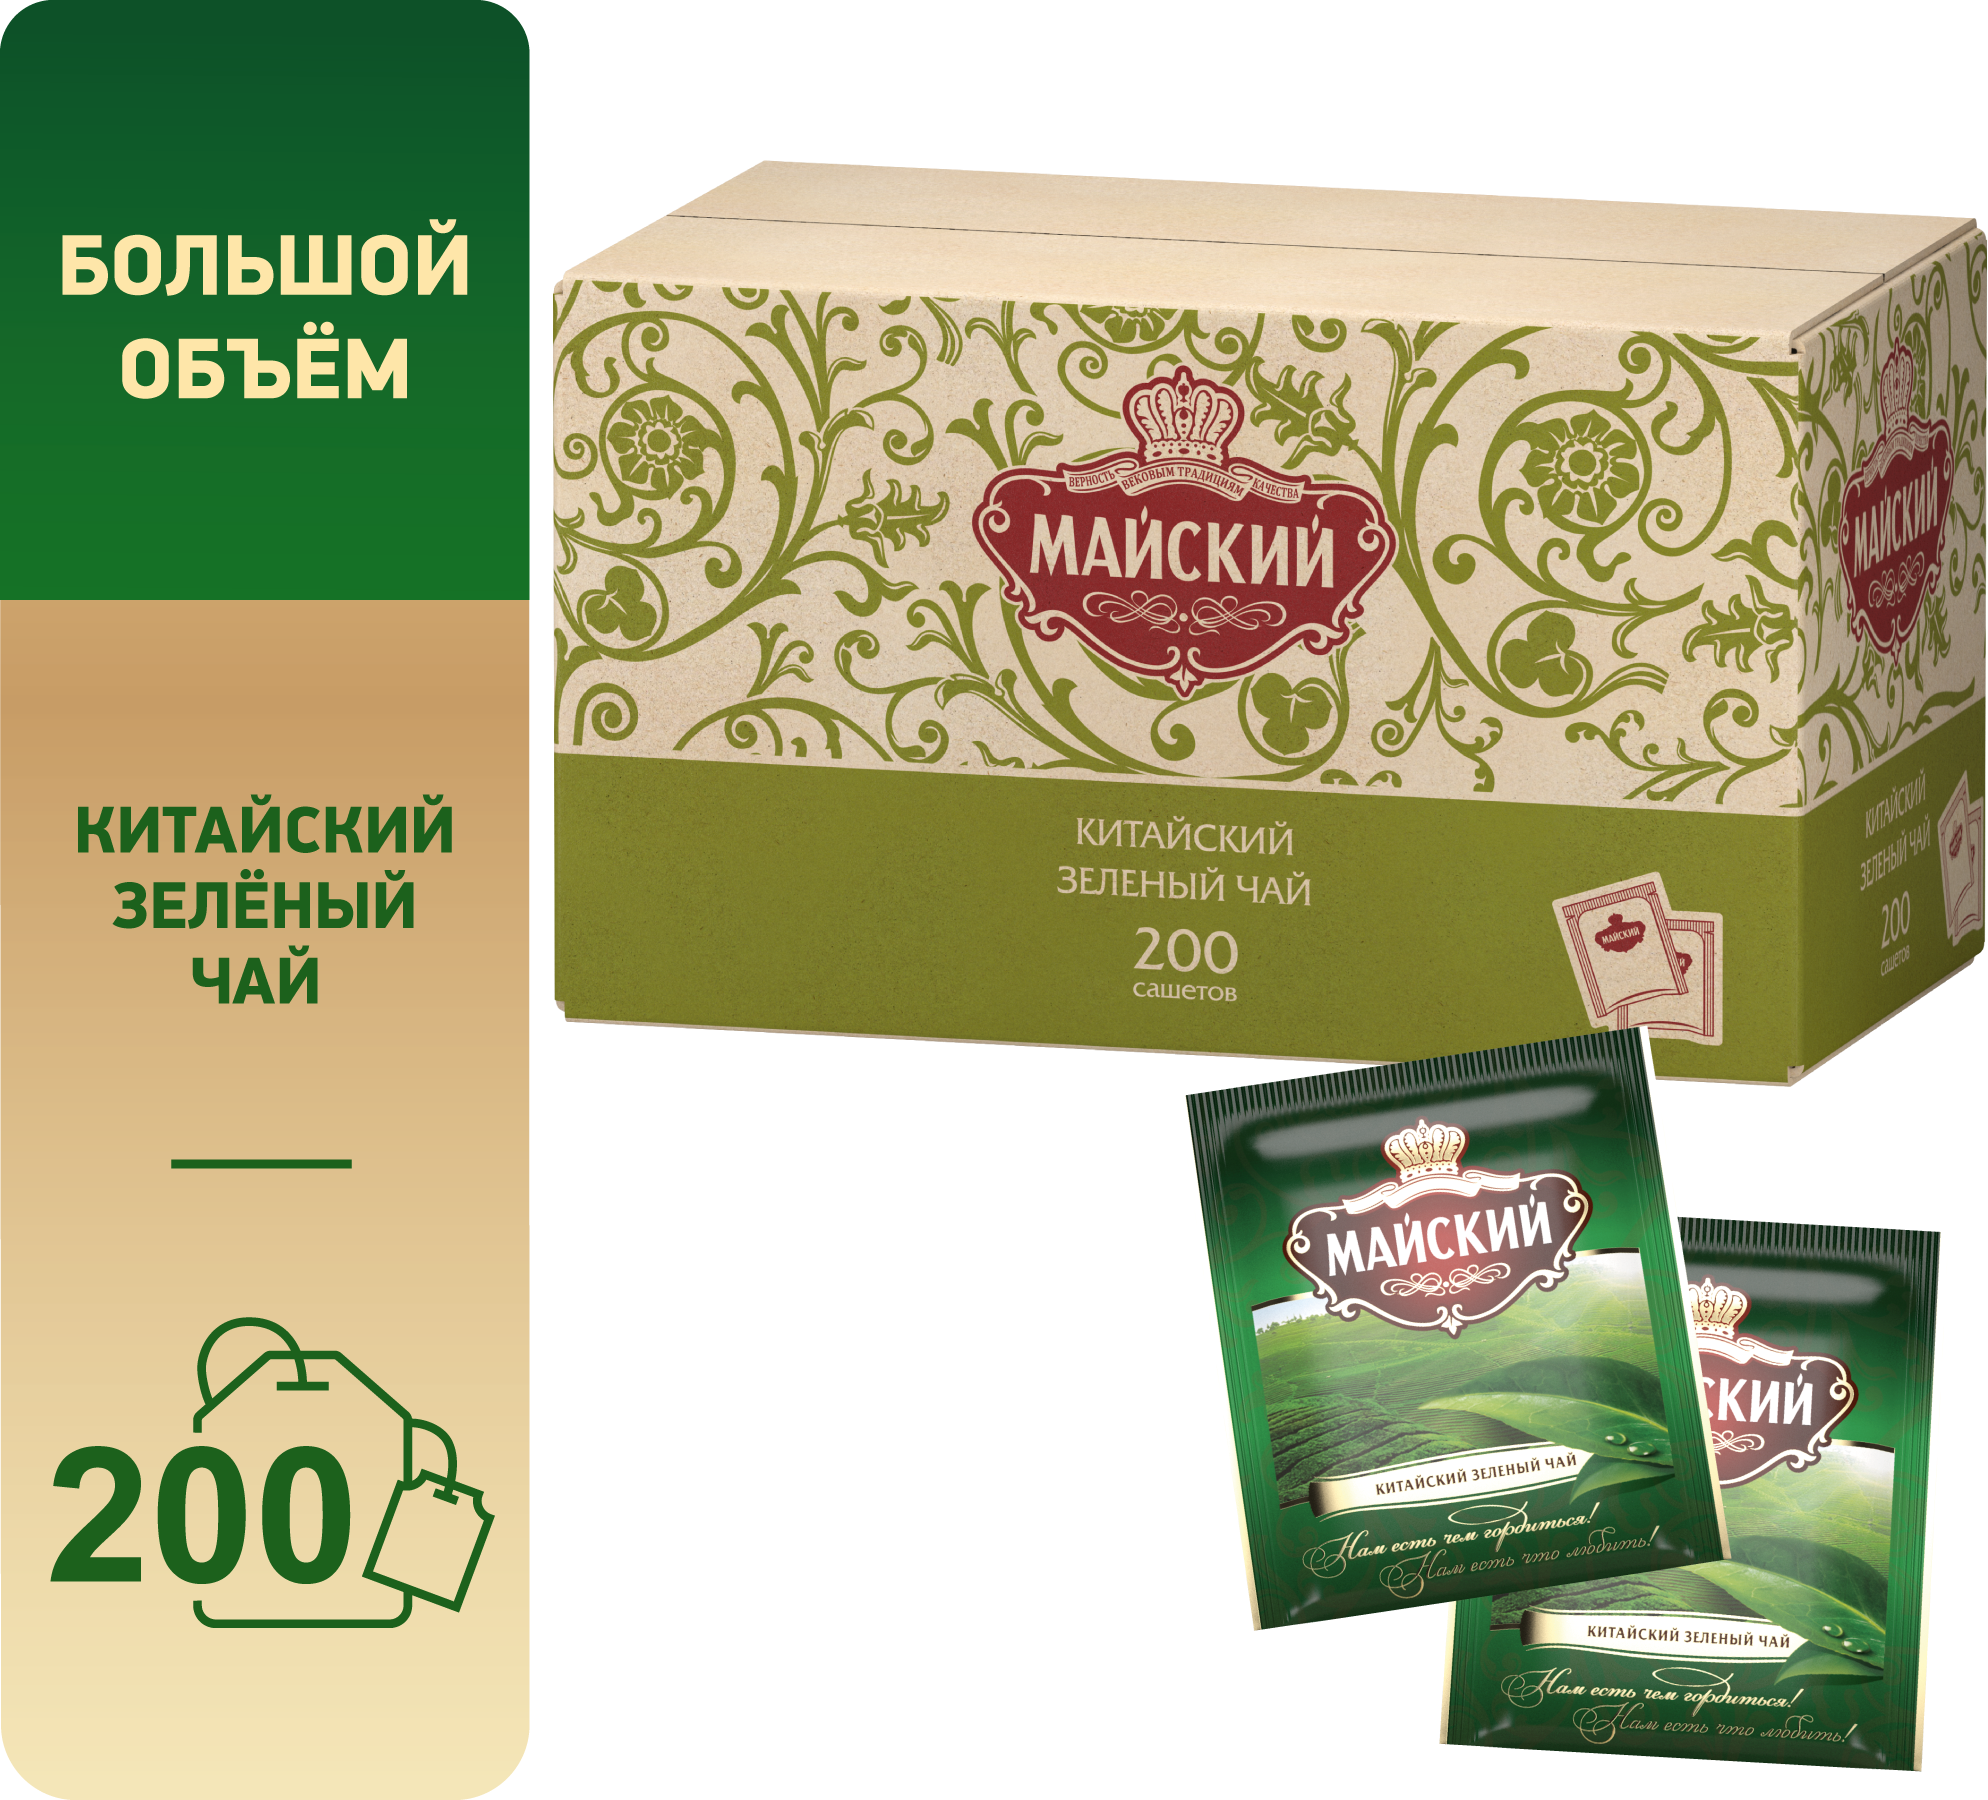 Чай Майский зеленый сашет 200пакетиков*2г — купить в интернет-магазине по низкой цене на Яндекс Маркете